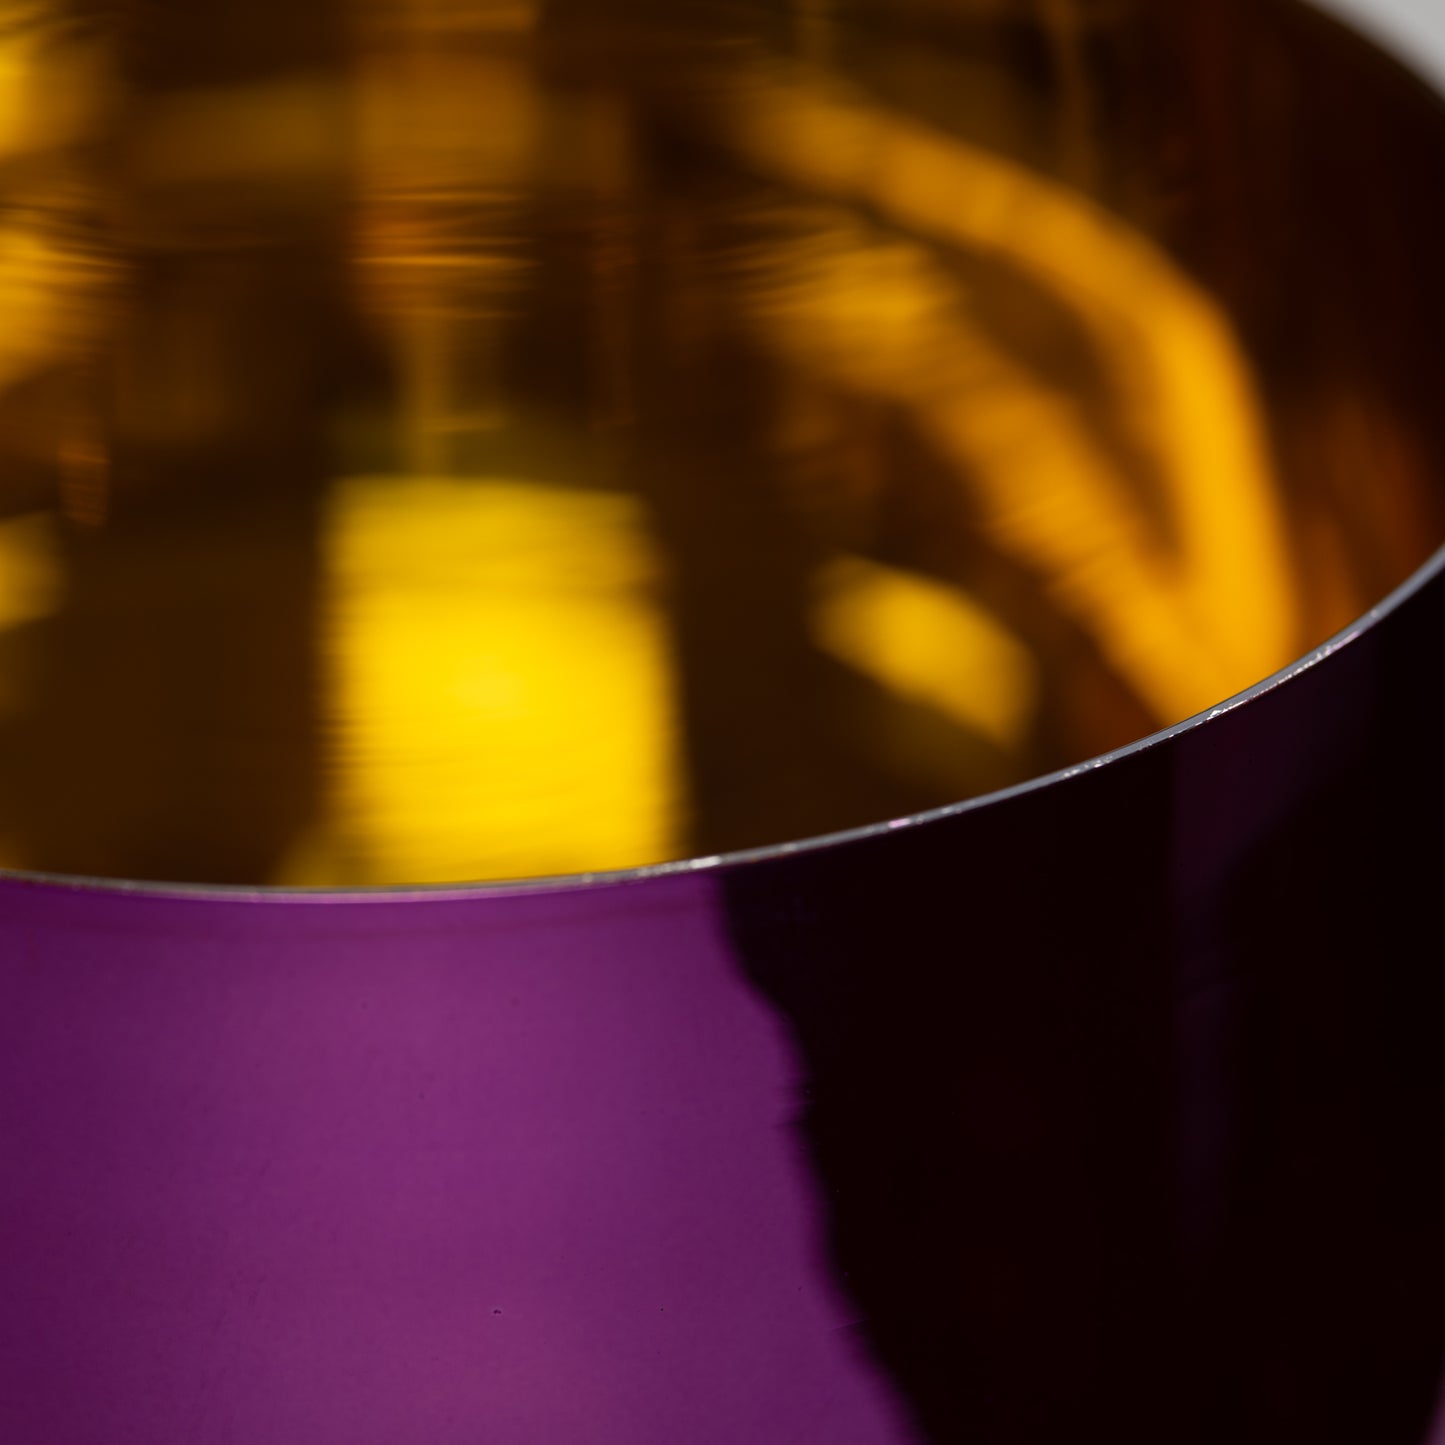 10.25" B-20 Metallic Purple & Gold Crystal Singing Bowl, Sacred Singing Bowls